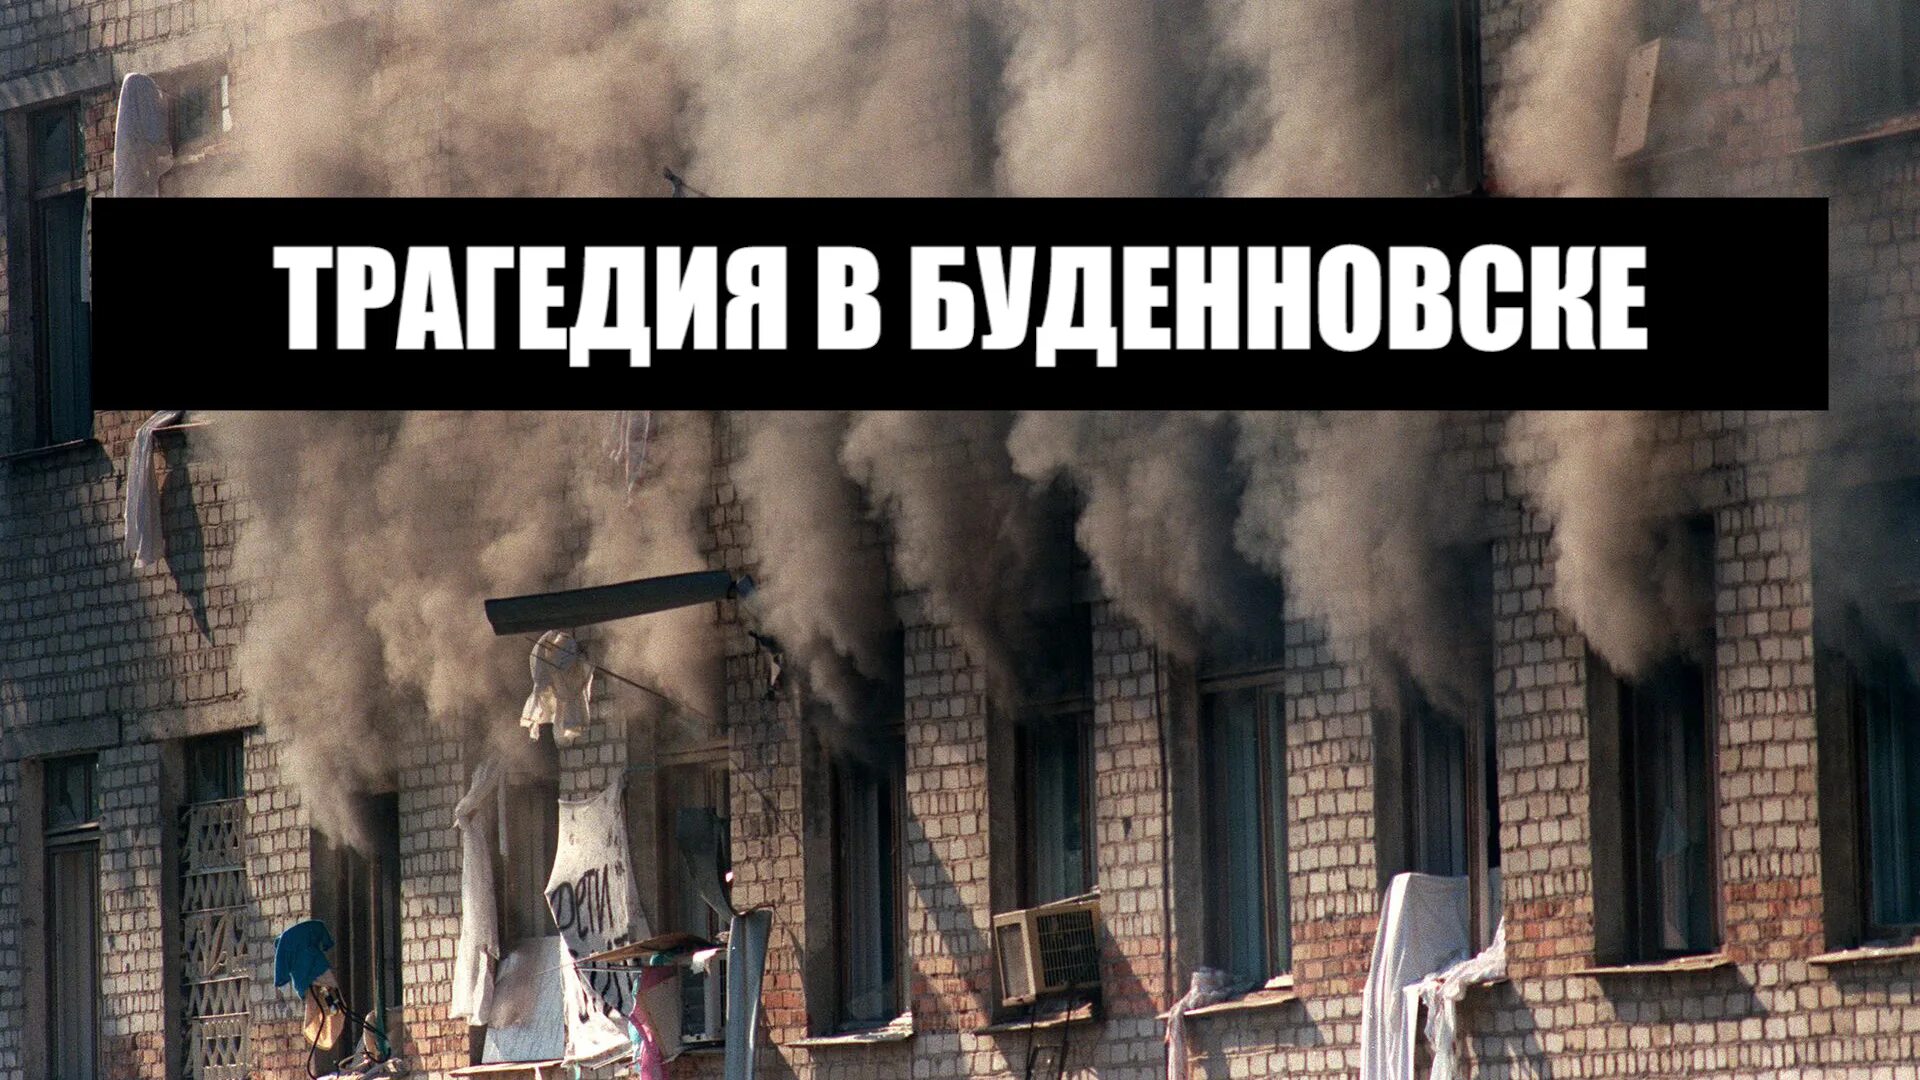 14 Июня 1995 года – Буденновск, захват больницы. Терроризм Буденновск 1995. Буденновск 14 июня 1995 года. Штурм больницы в Буденновске 1995.